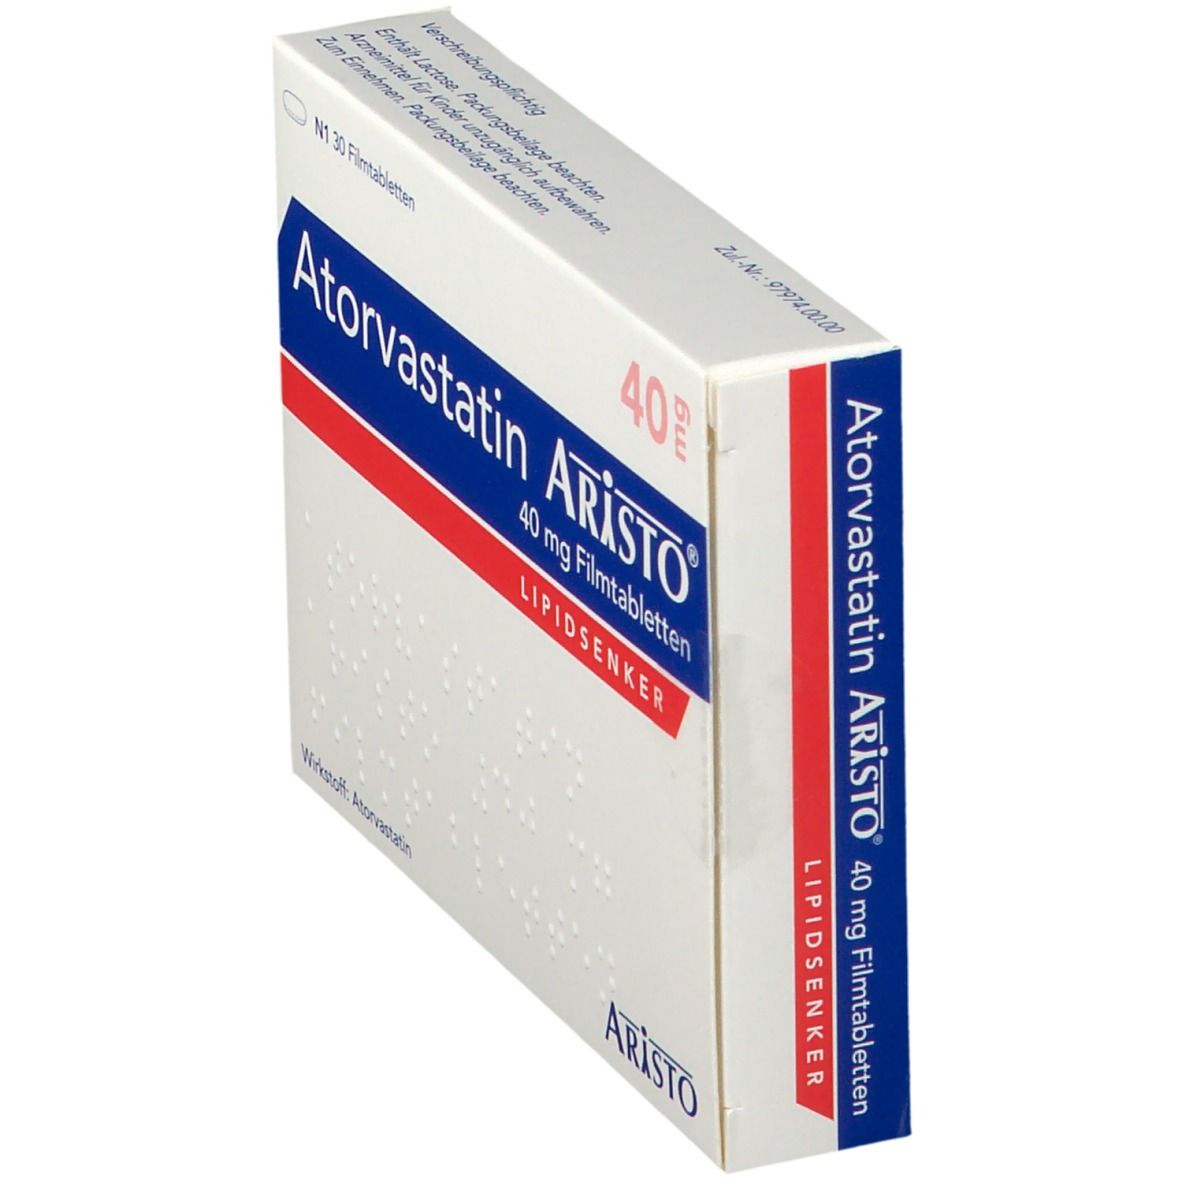 Atorvastatin Aristo® 40 mg